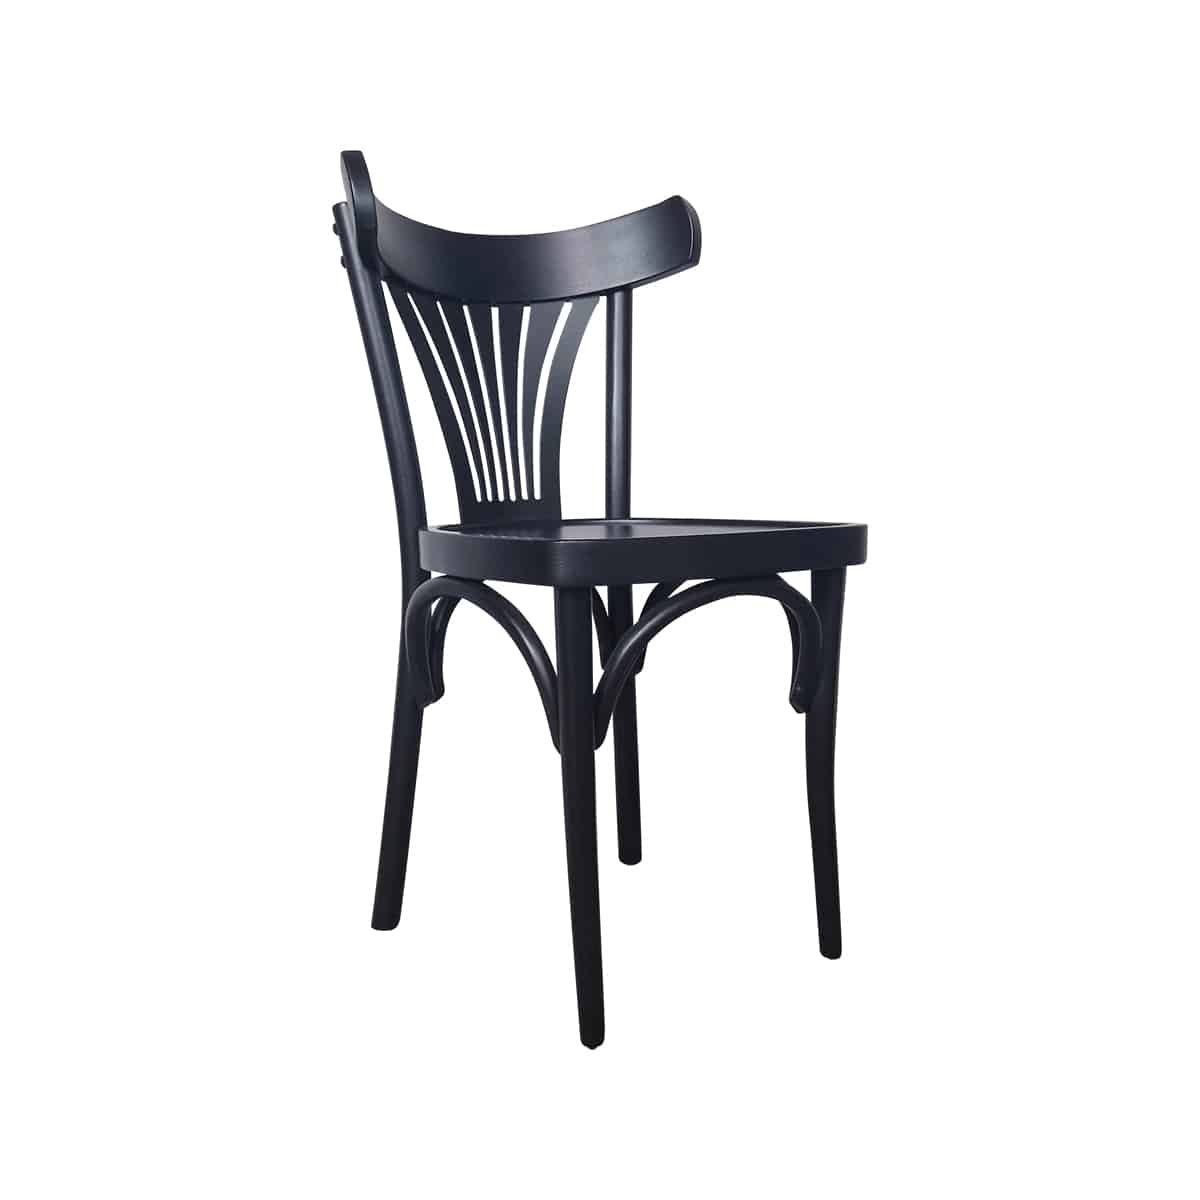 Thonet bentwood café stoelen waaier - Super Seat